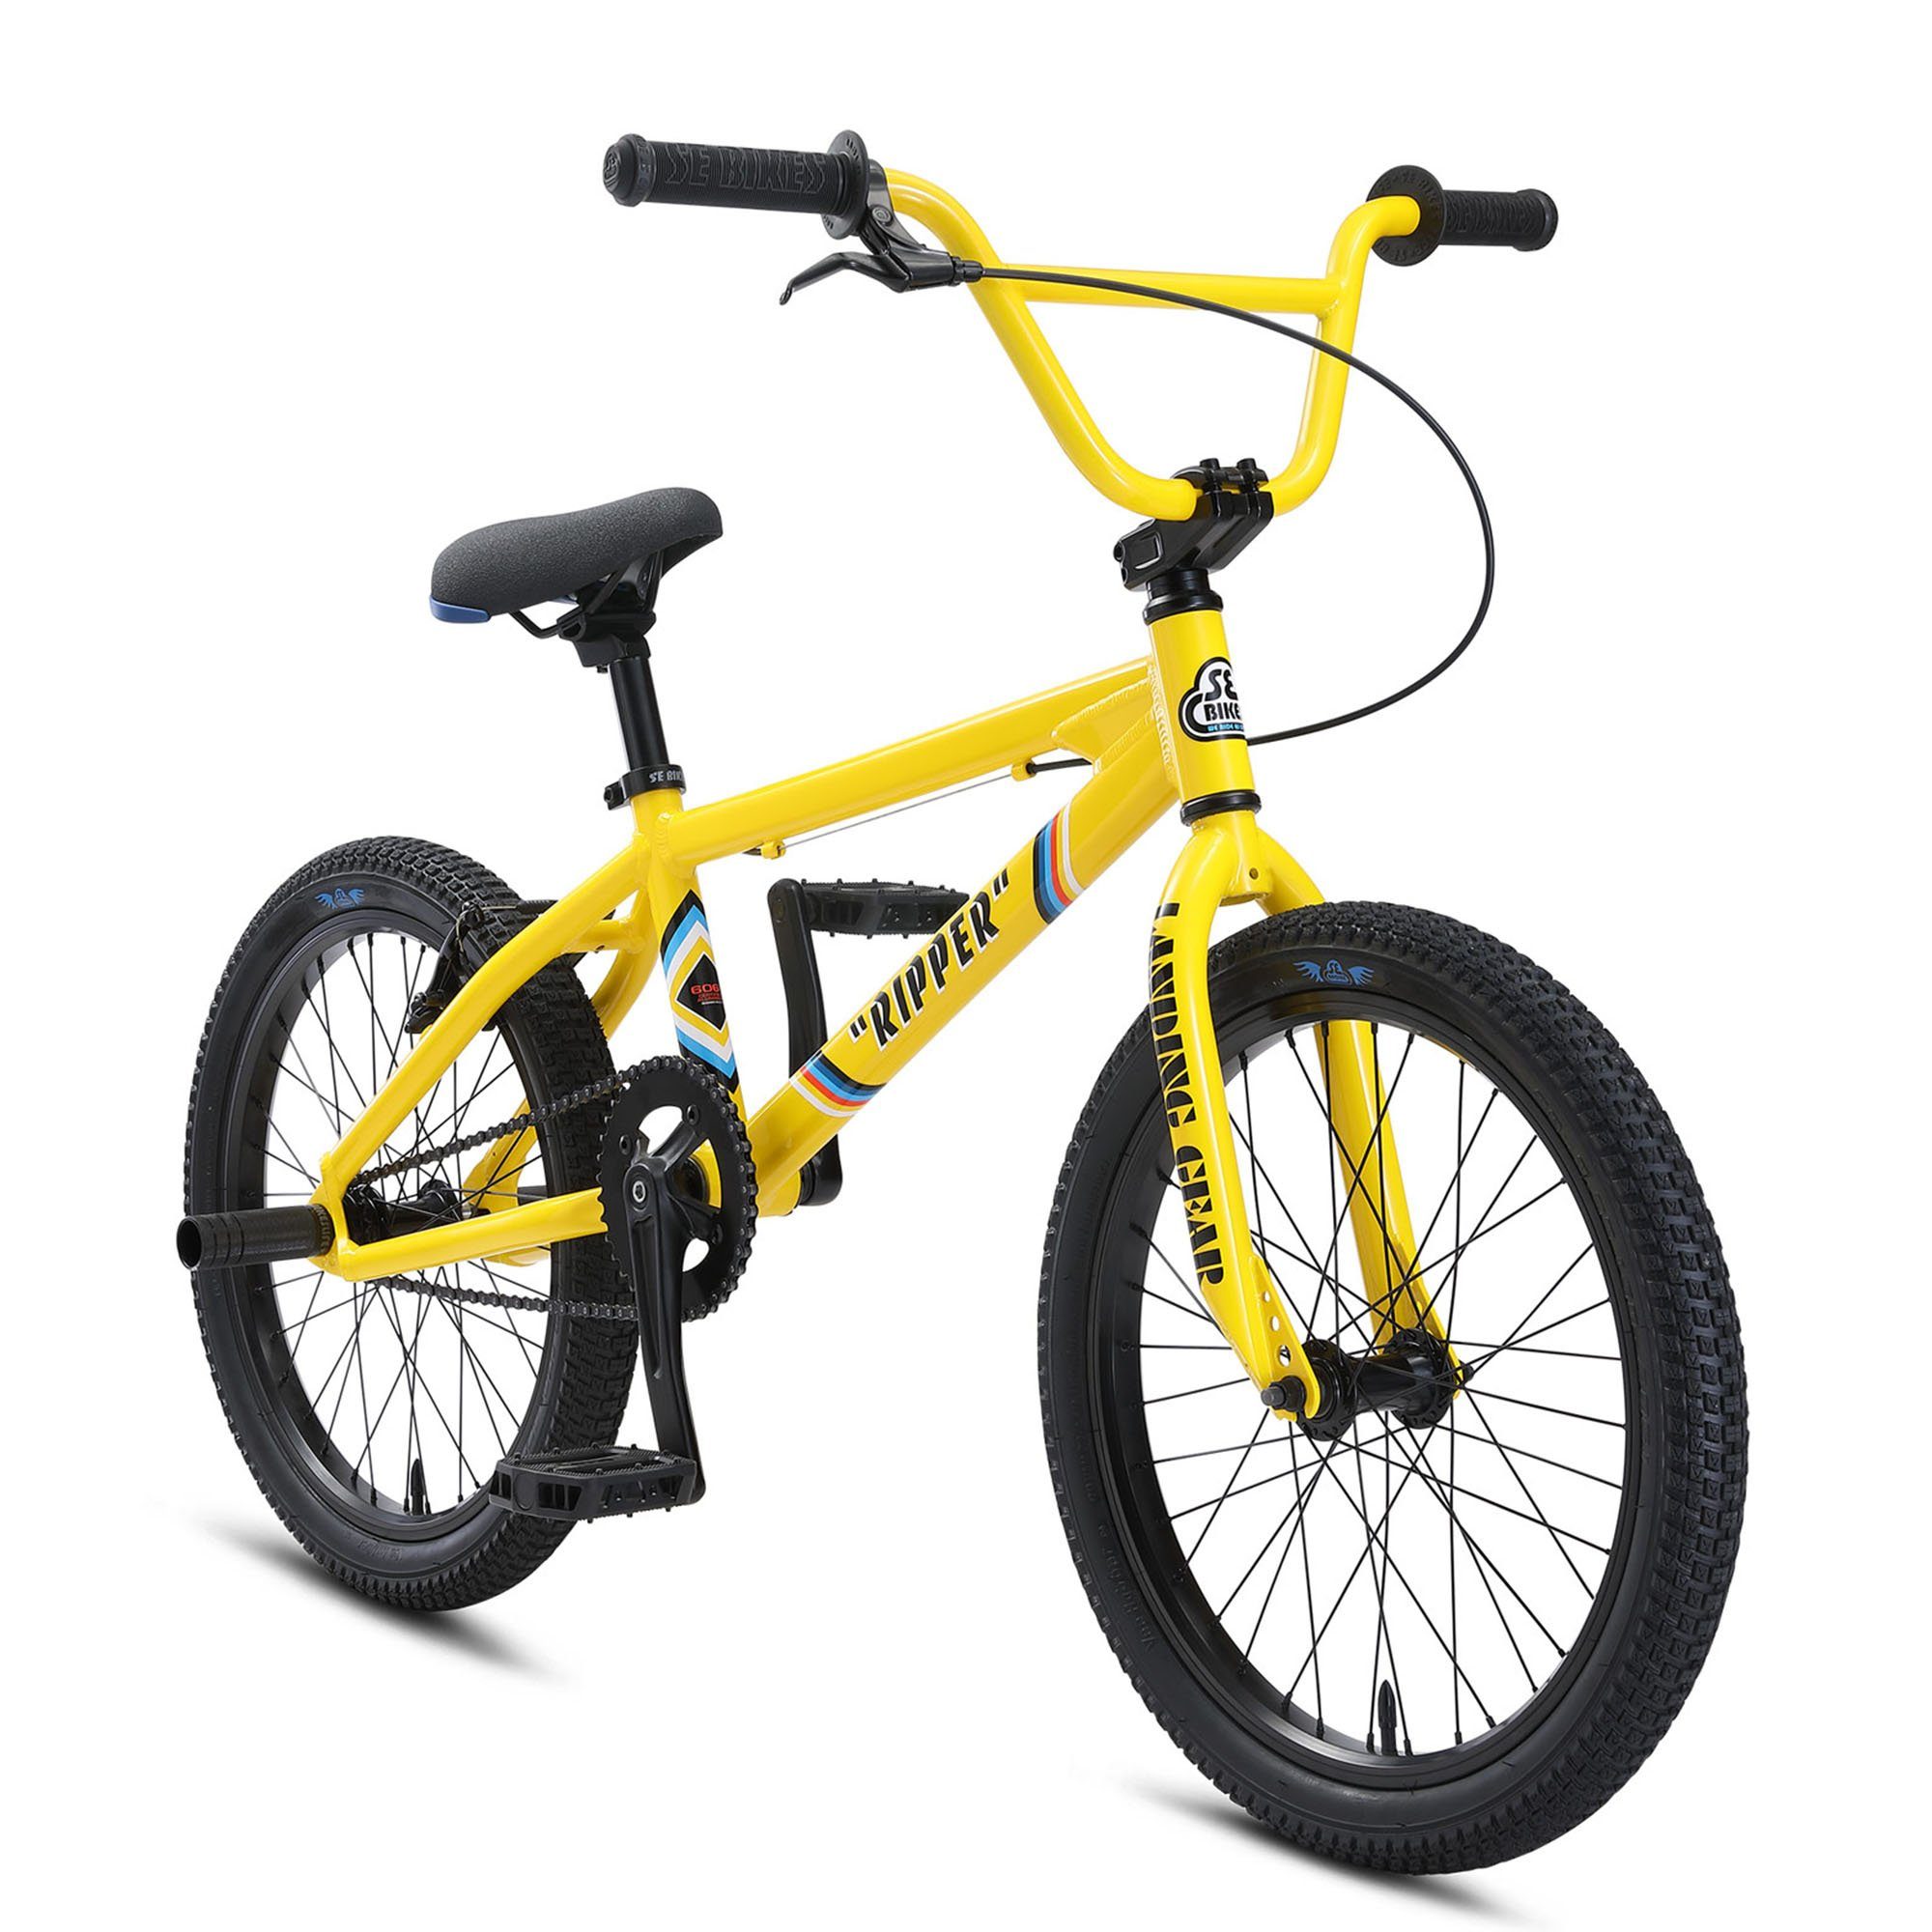 Sonderangebotswaren SE Bikes BMX-Rad Ripper, 1 ohne Schaltung, Fahrrad BMX BMX 20" Freestyle Oldschool Gang, Street Rad yellow Bike